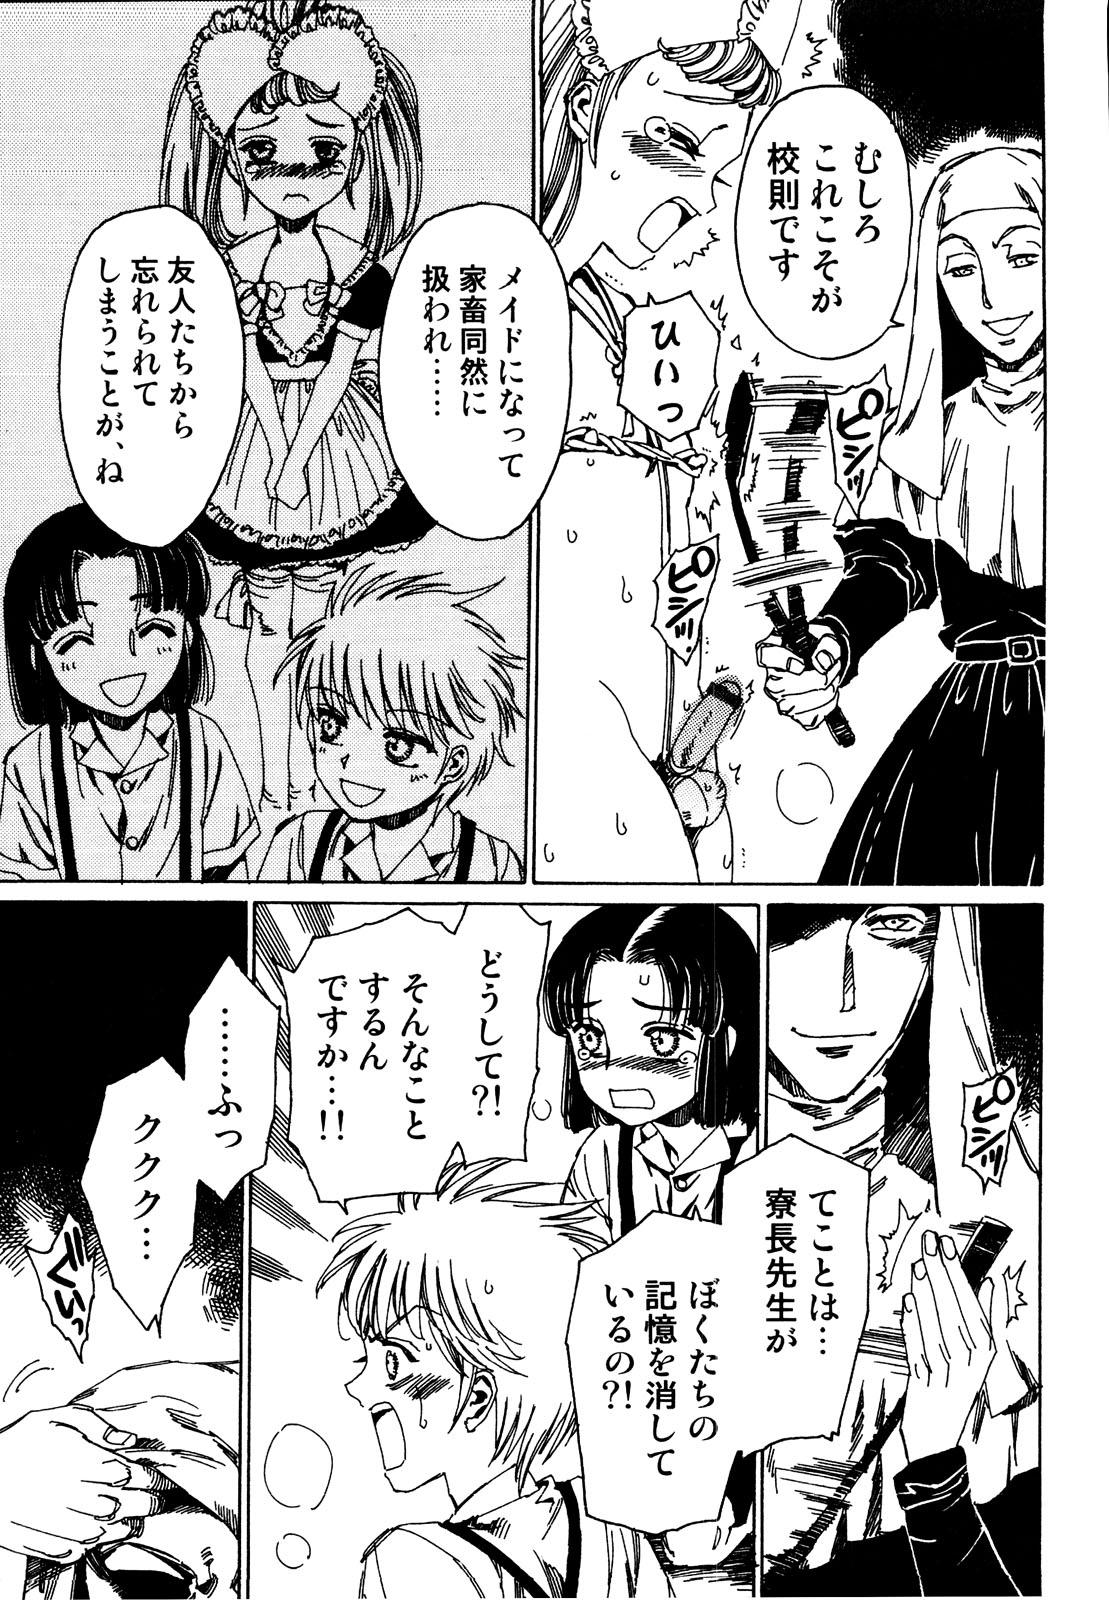 Bunduda Ero Shota 19 - Otokonoko X Otokonoko Culazo - Page 7